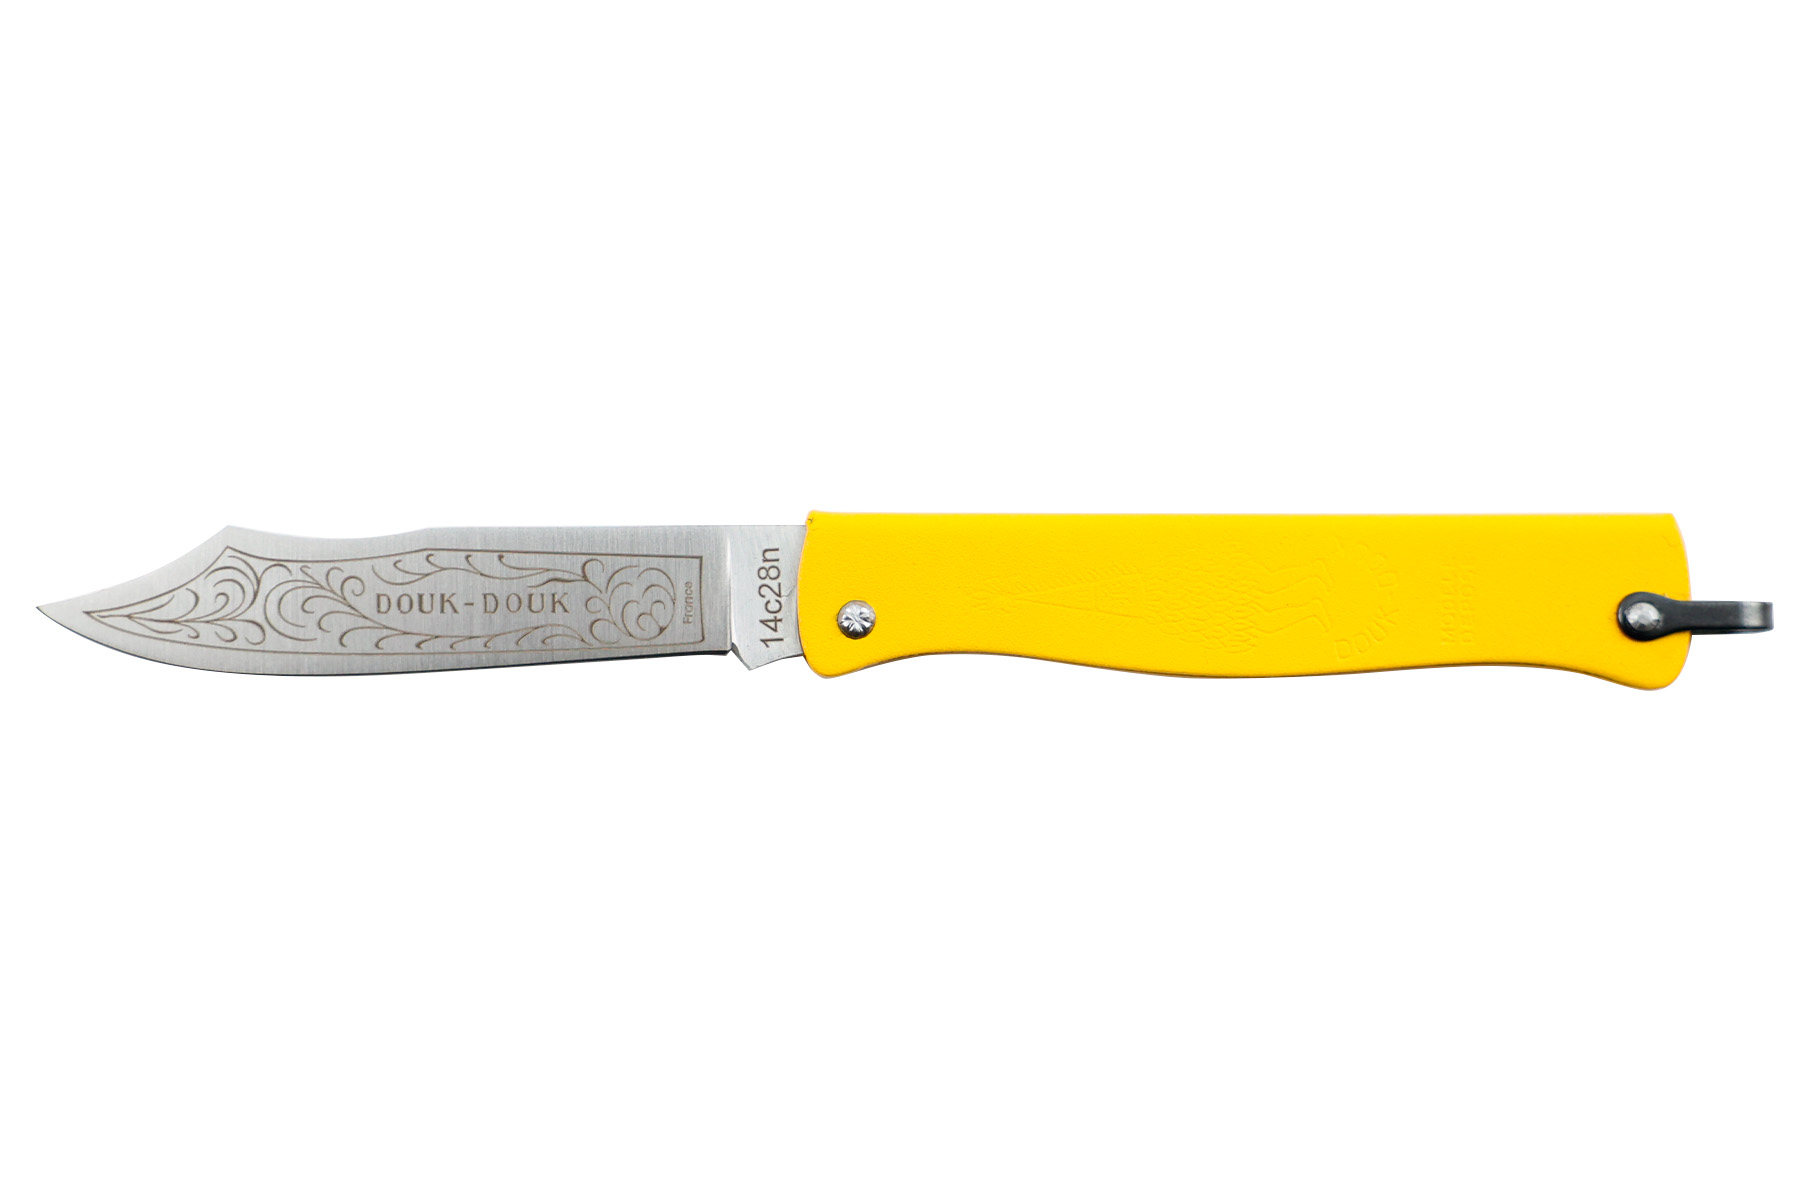 Couteau pliant Douk-Douk par Cognet couleur jaune  (Petit-modèle) - Nouvelle version